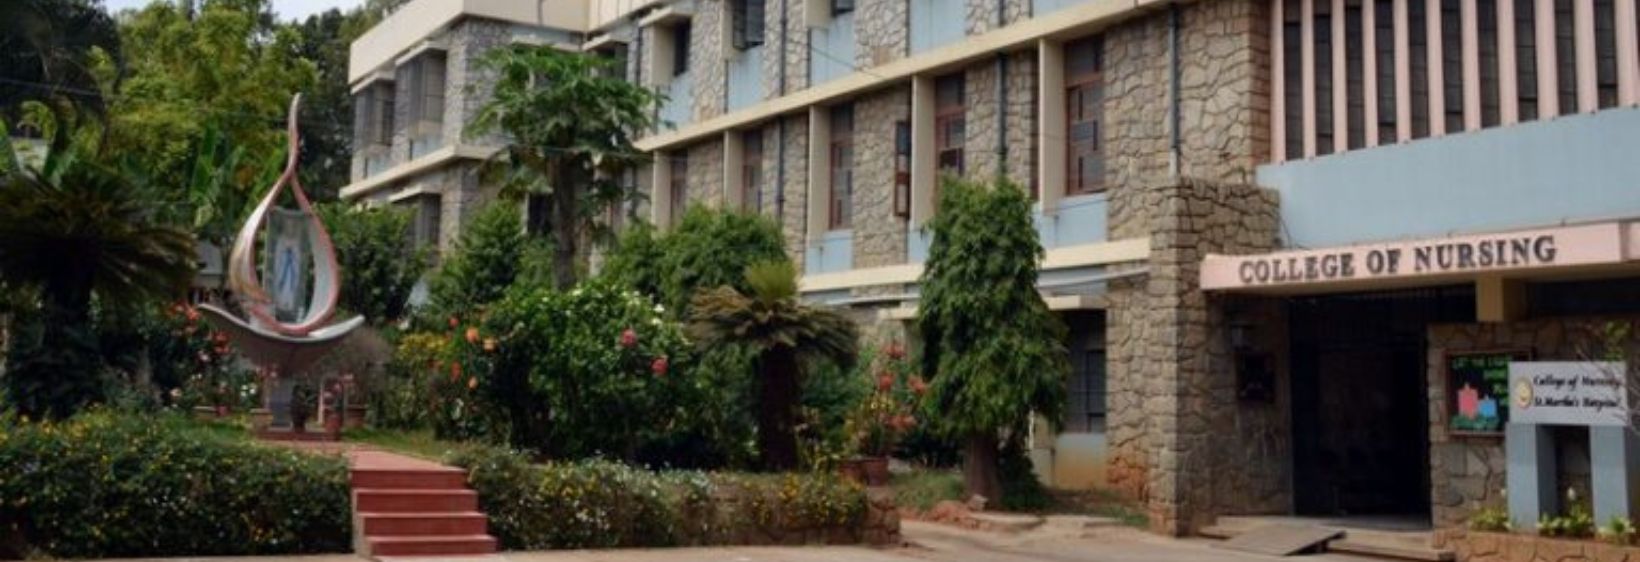 College of Nursing - Bangalore